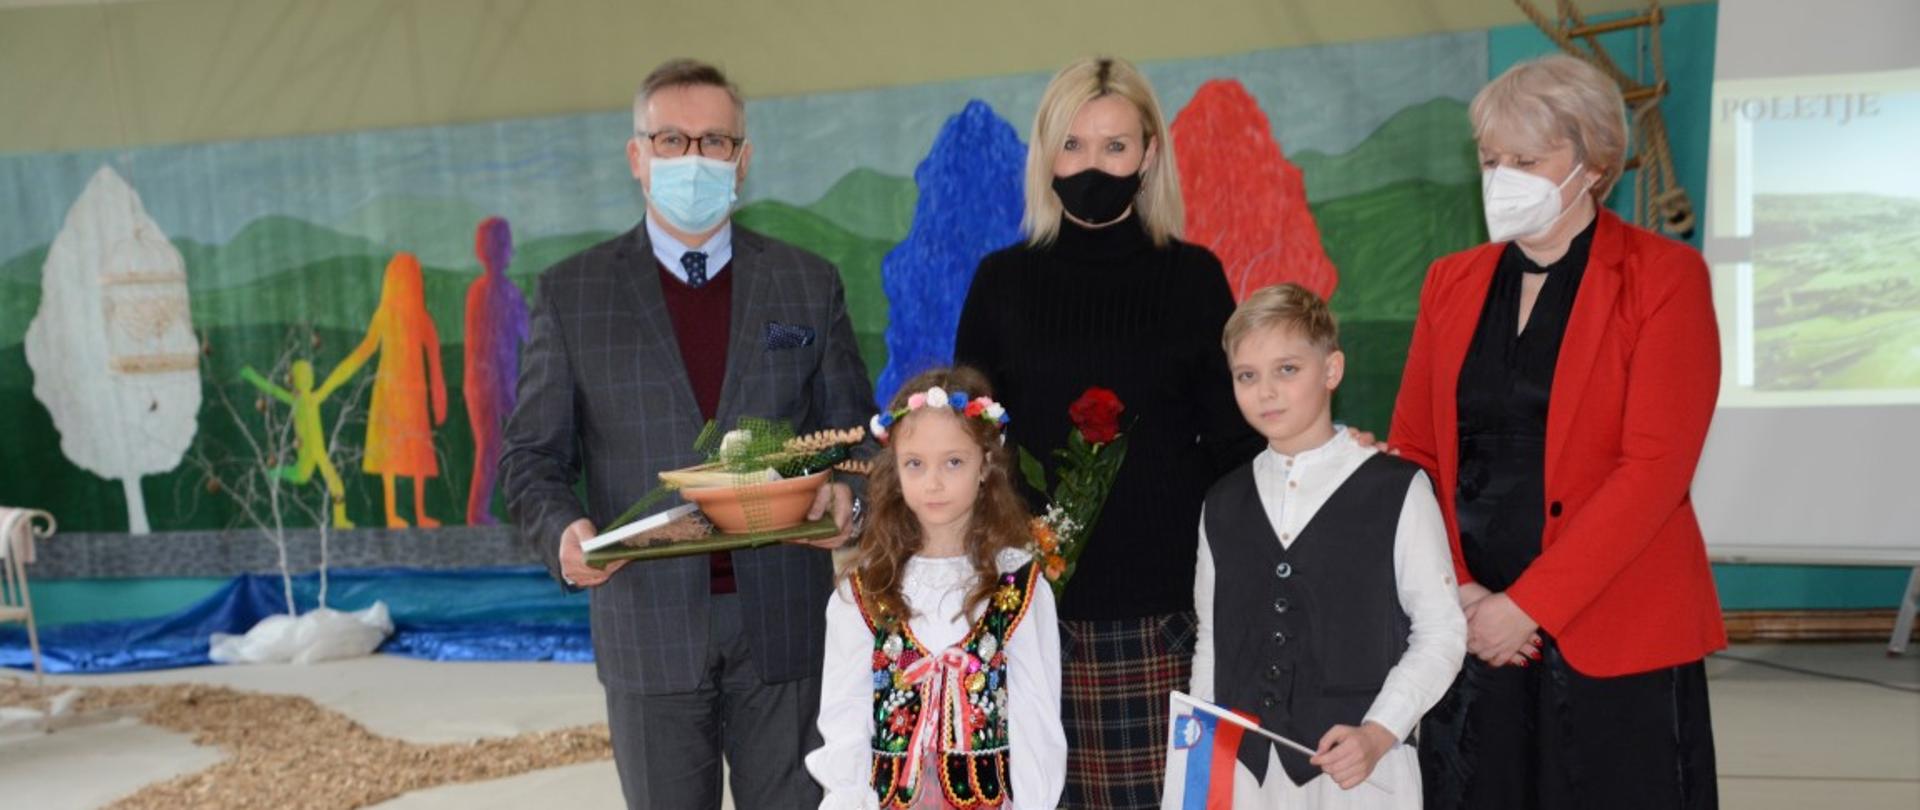 Spotkanie Ambasadora Krzysztofa Olendzkiego i Joanny Olendzkiej z dyrekcją, nauczycielami i uczniami szkoły w Kuzmie